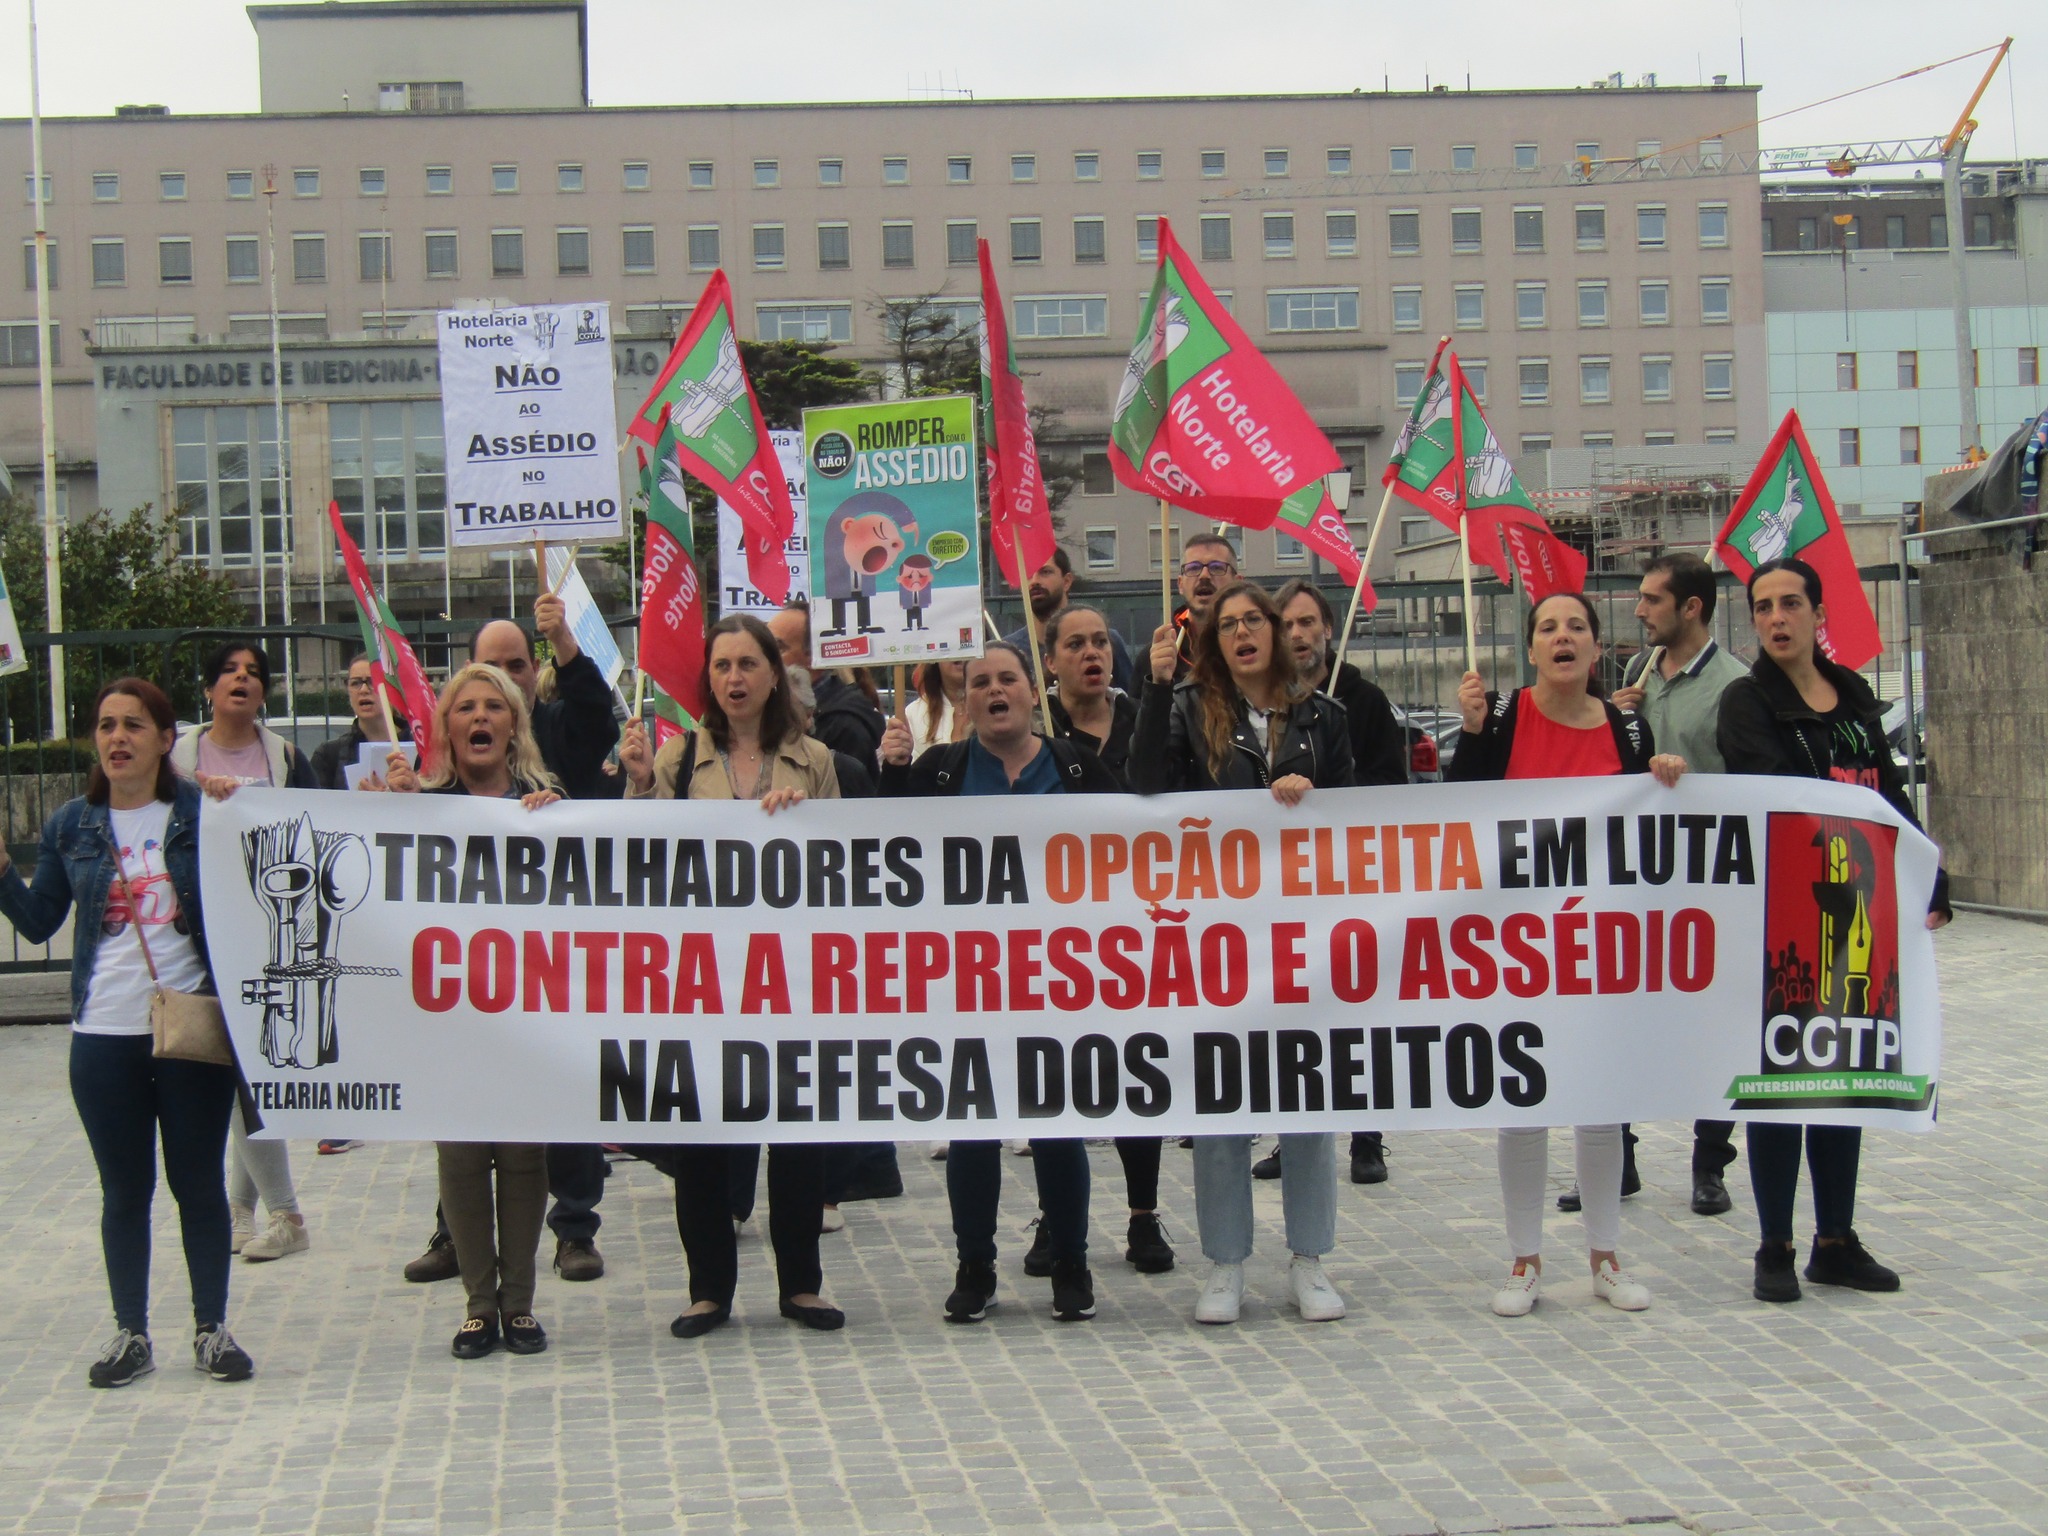 Opção Eleita instaurou processos disciplinares por os trabalhadores aderirem a uma greve